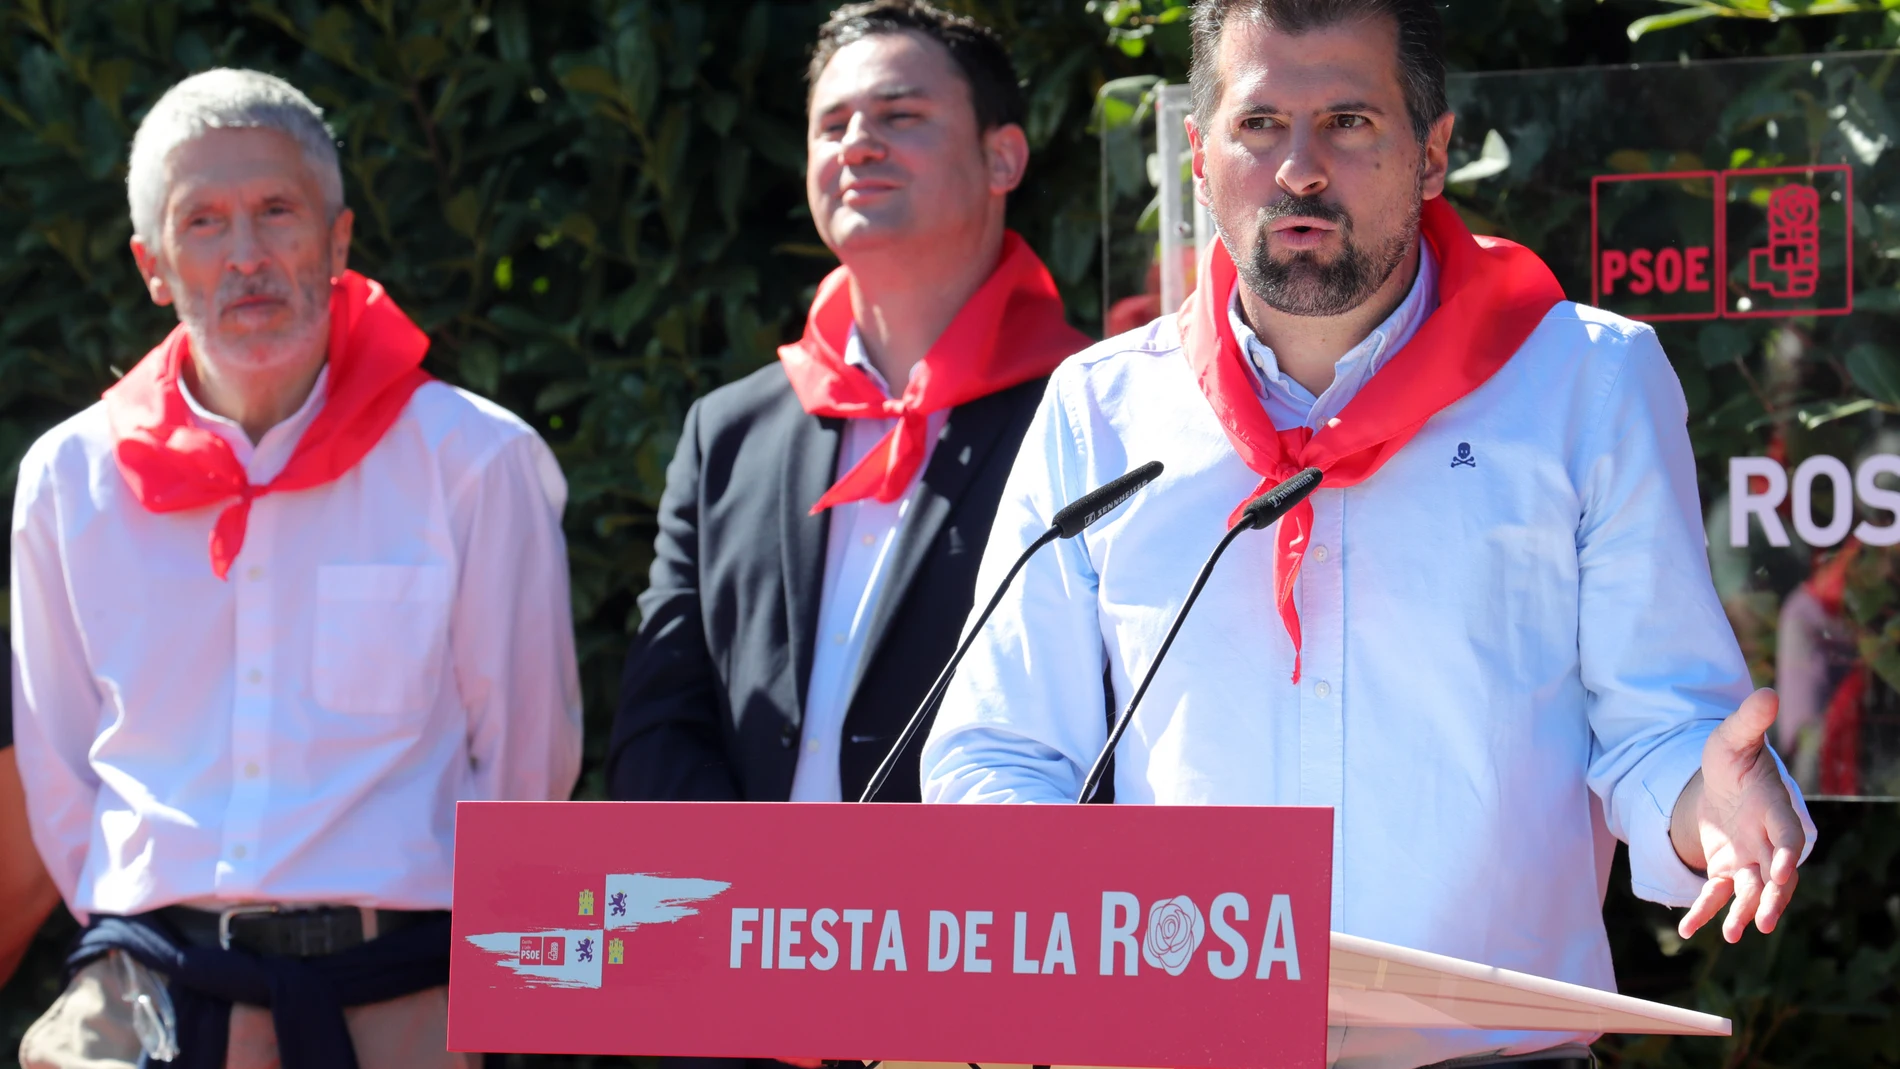 El secretario general del PSOECyL, Luis Tudanca, interviene en la Fiesta de la Rosa de Ponferrada, en la que también participaron el ministro Grande-Marlaska y Javier Alfonso Cendón